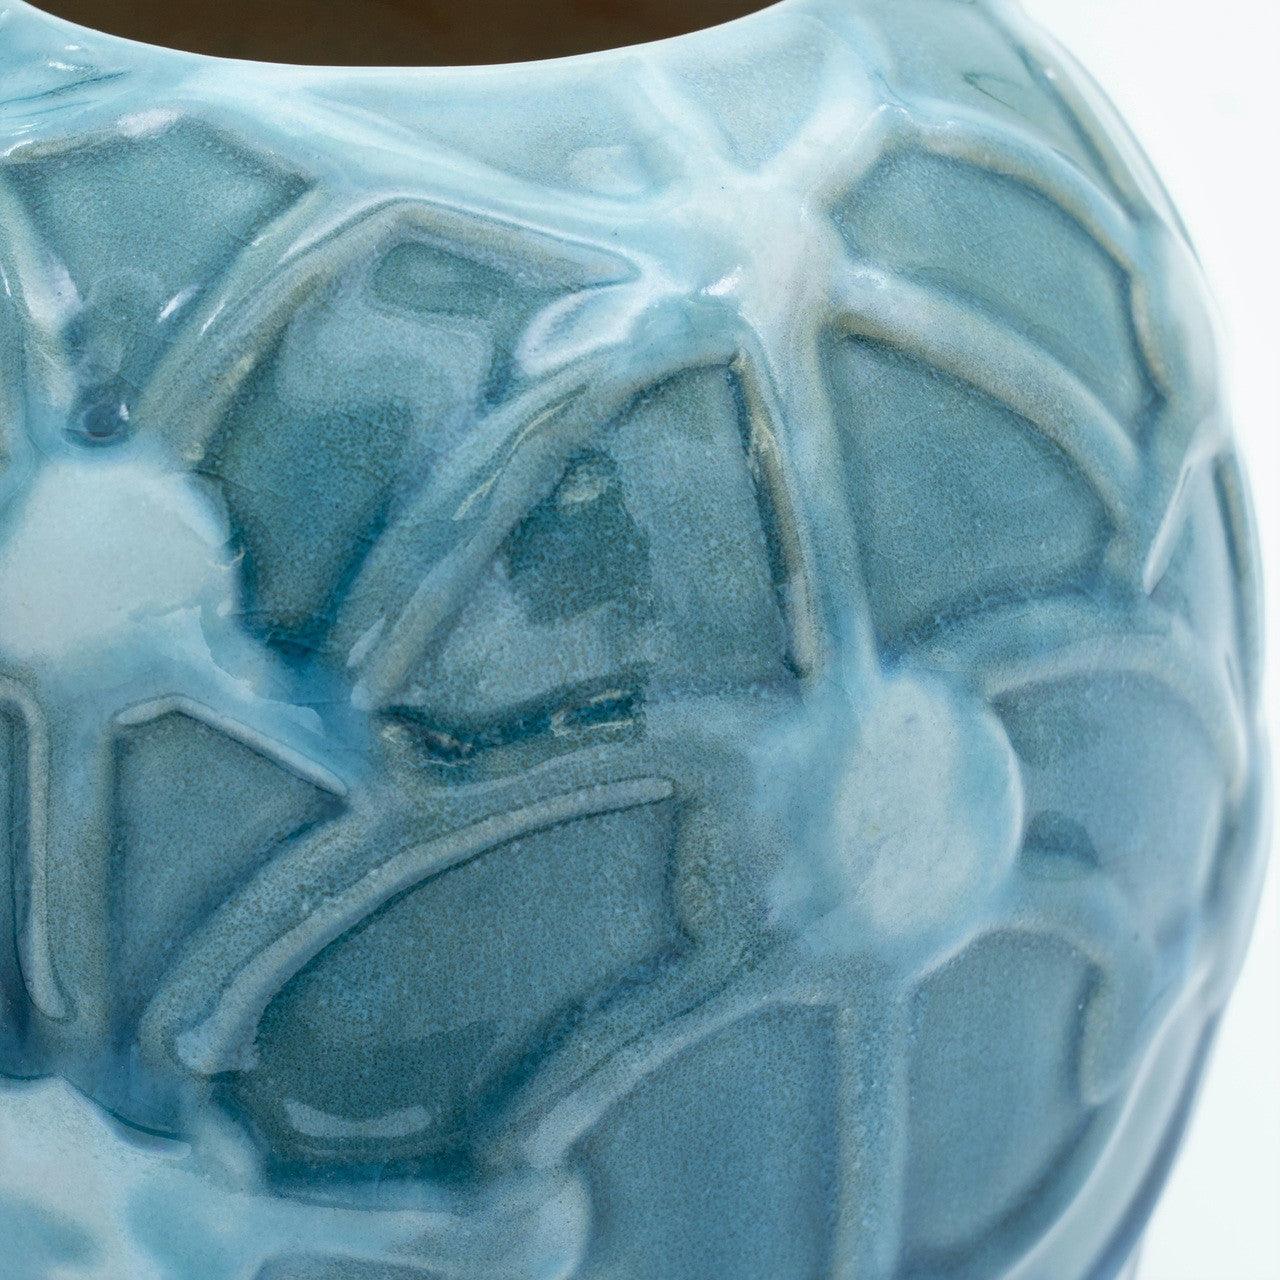 Grotto Aqua Rope Emboss Round Vase - Euro Ceramica 